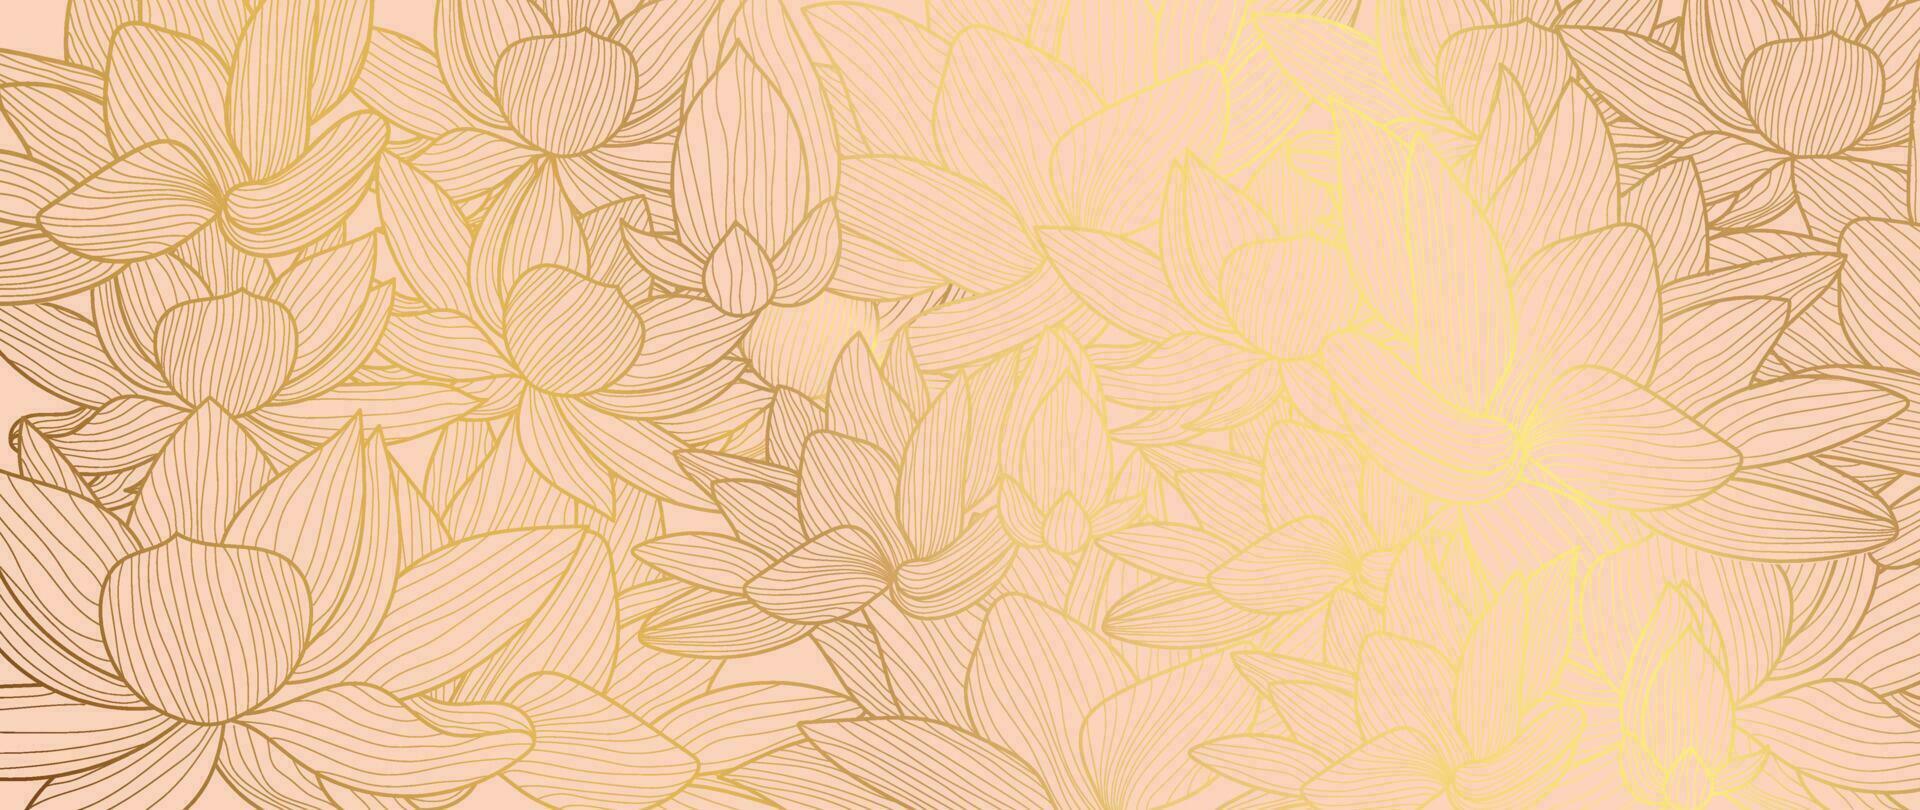 luxo mão desenhado lótus flores fundo vetor. elegante gradiente ouro lótus flores linha arte, folhas em Rosa fundo. oriental Projeto para Casamento convite, cobrir, imprimir, decoração, modelo. vetor